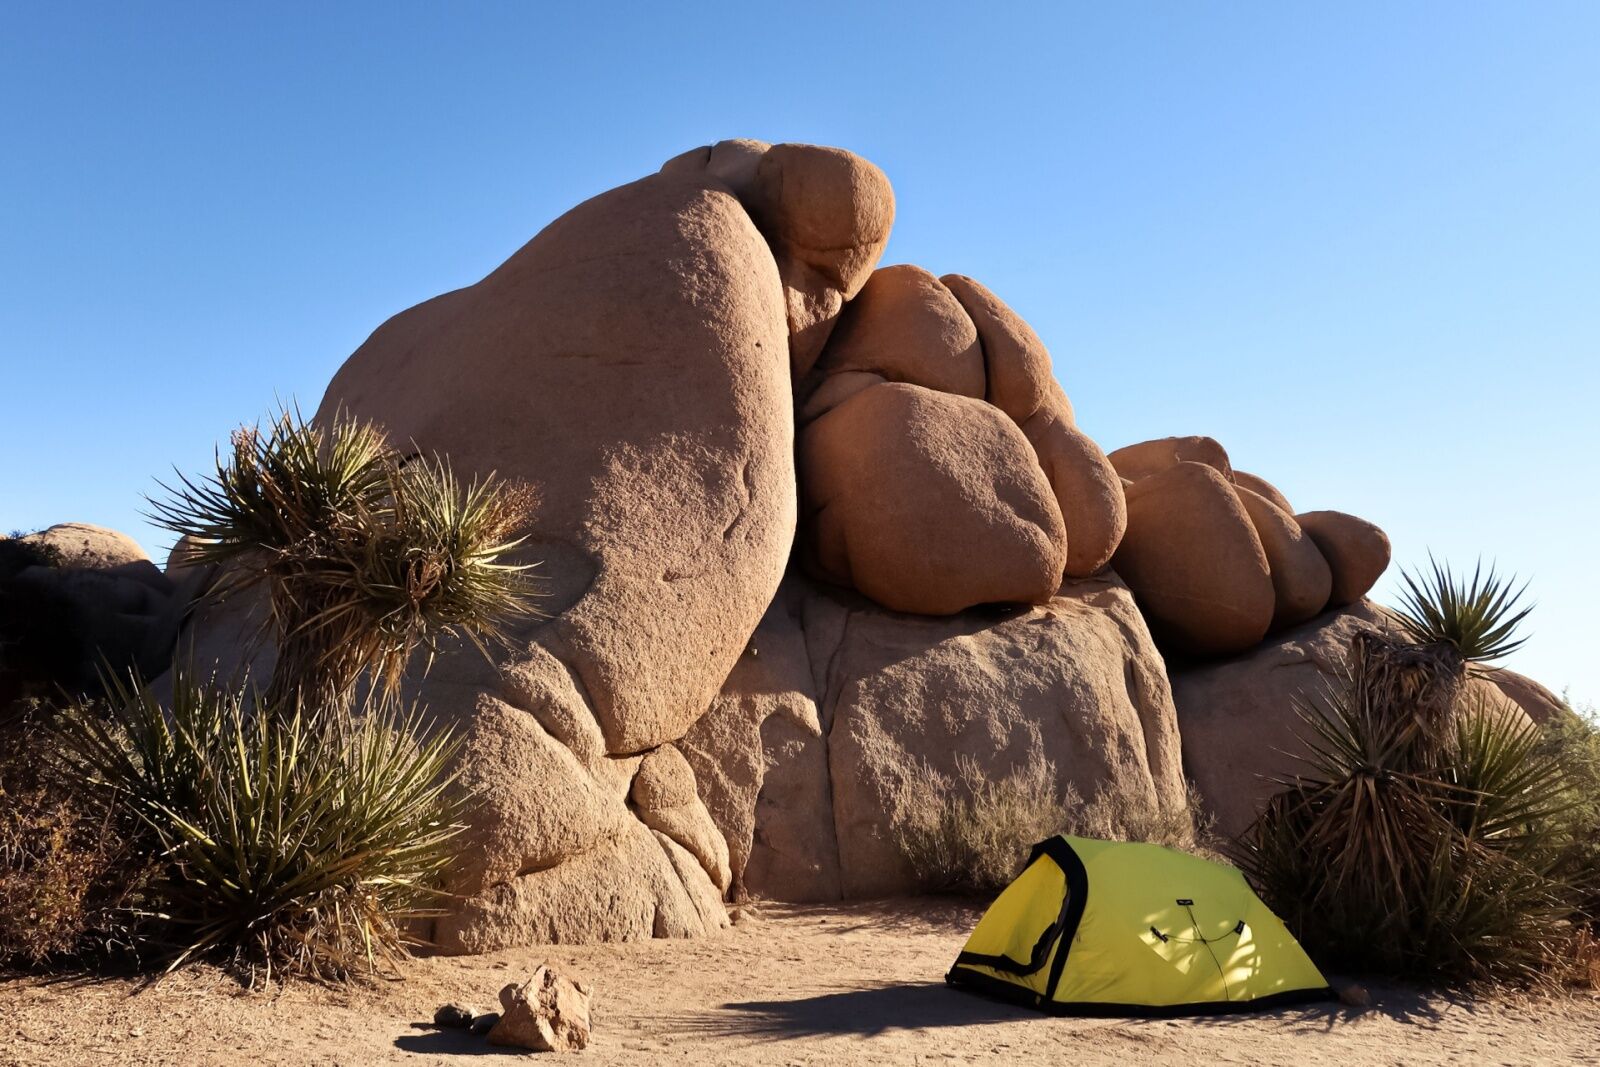 tent camping at national parks - jumbo rocks